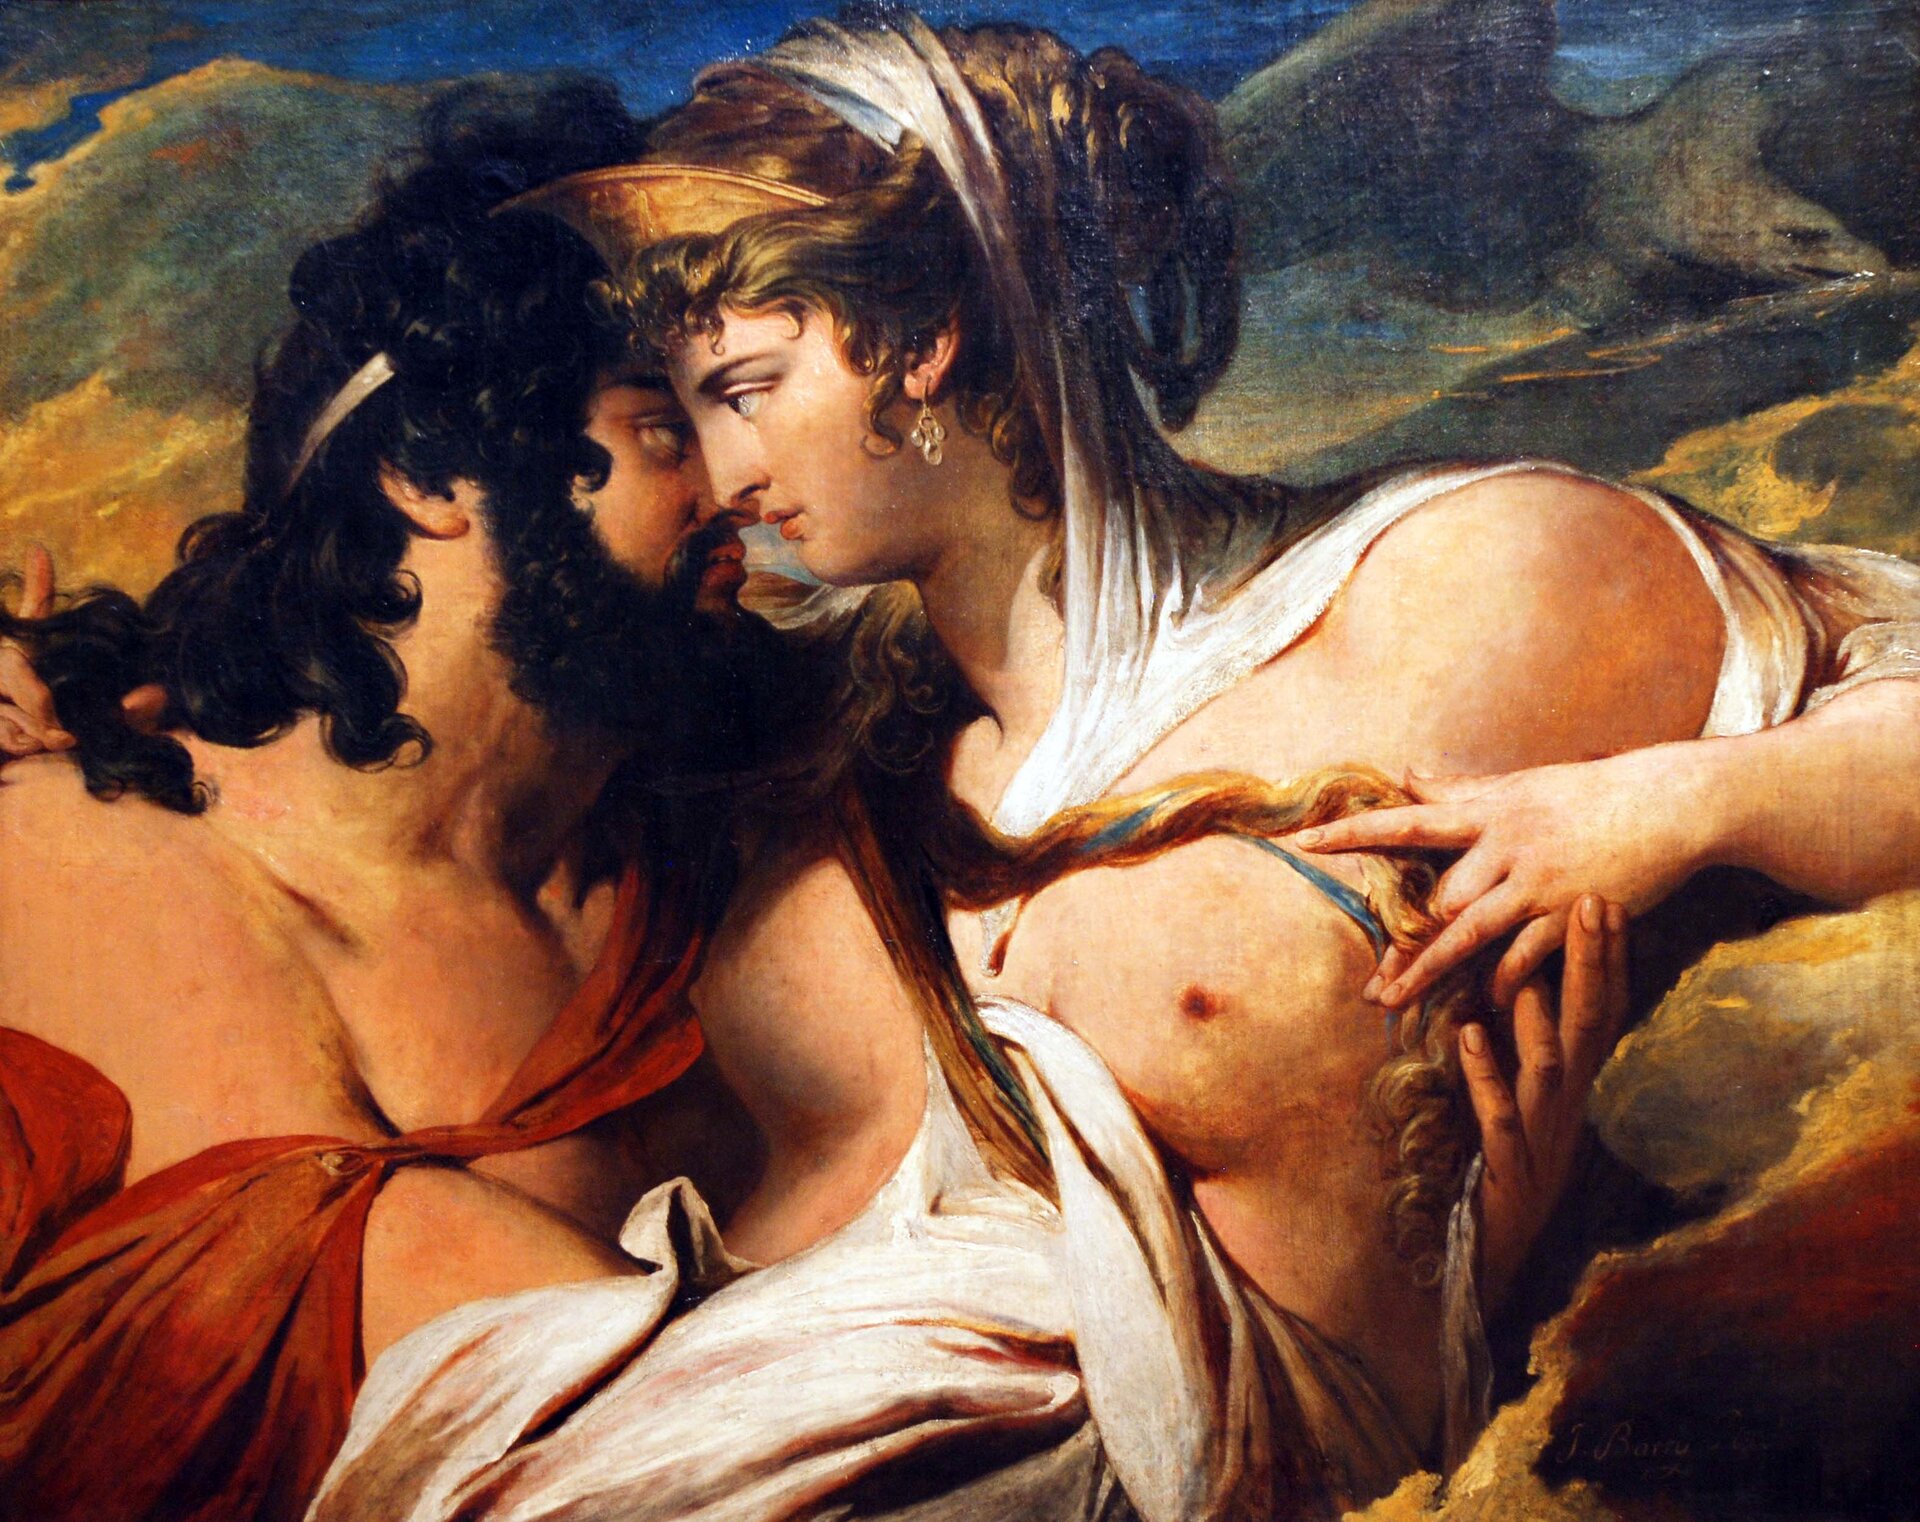 Obraz autorstwa Jamesa Barrego pod tytułem „Jowisz i Junona na górze Ida” przedstawia parę leżącą wśród skał. Zeus został przedstawiony jako mężczyzna w średnim wieku o ciemnej karnacji. Ma on bardzo długie włosy oraz bujny zarost. Obok niego znajduje się młoda ciemnowłosa półnaga kobieta przepasana białym materiałem. Para namiętnie patrzy na siebie, szykuje się do pocałunku. W tle widoczne są góry i chmury.